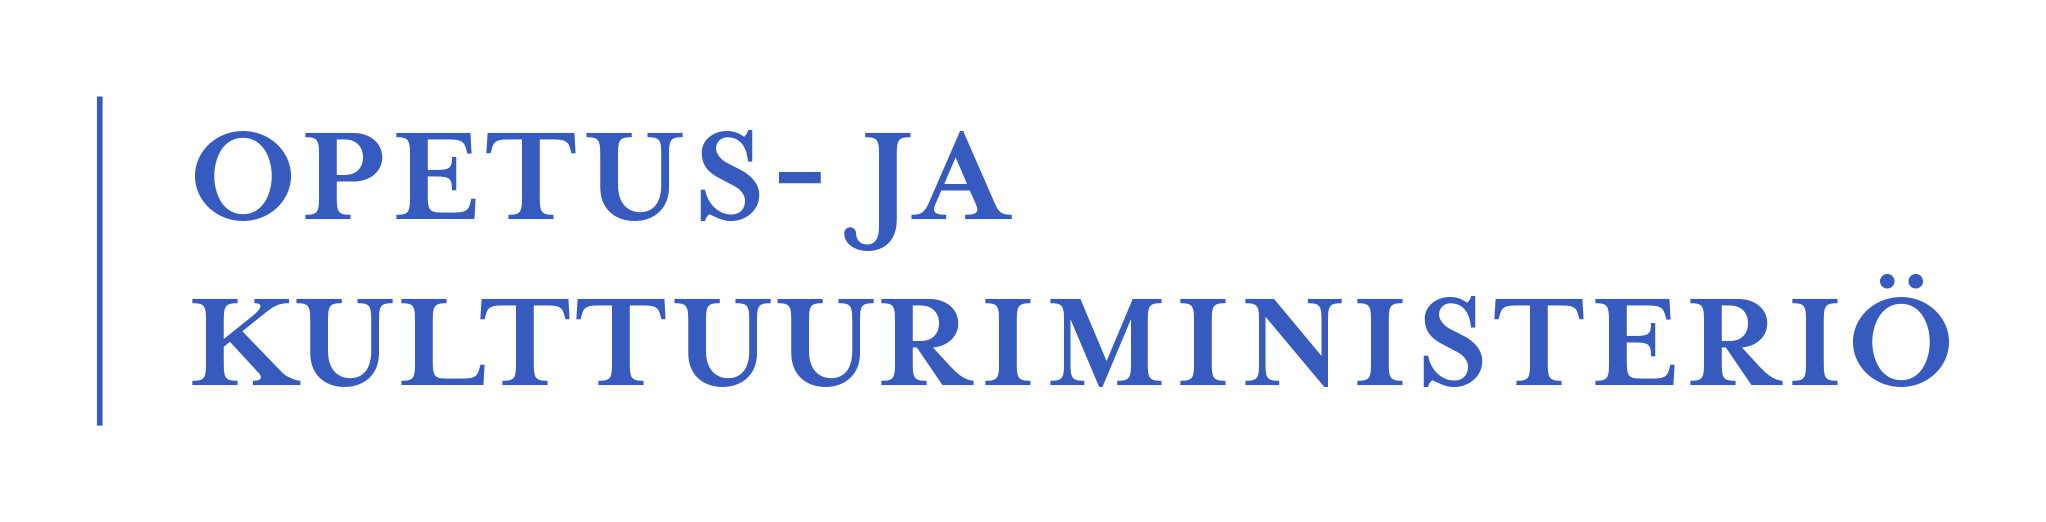 Opetus- ja kultturiministeriön logo sinisenä tekstinä